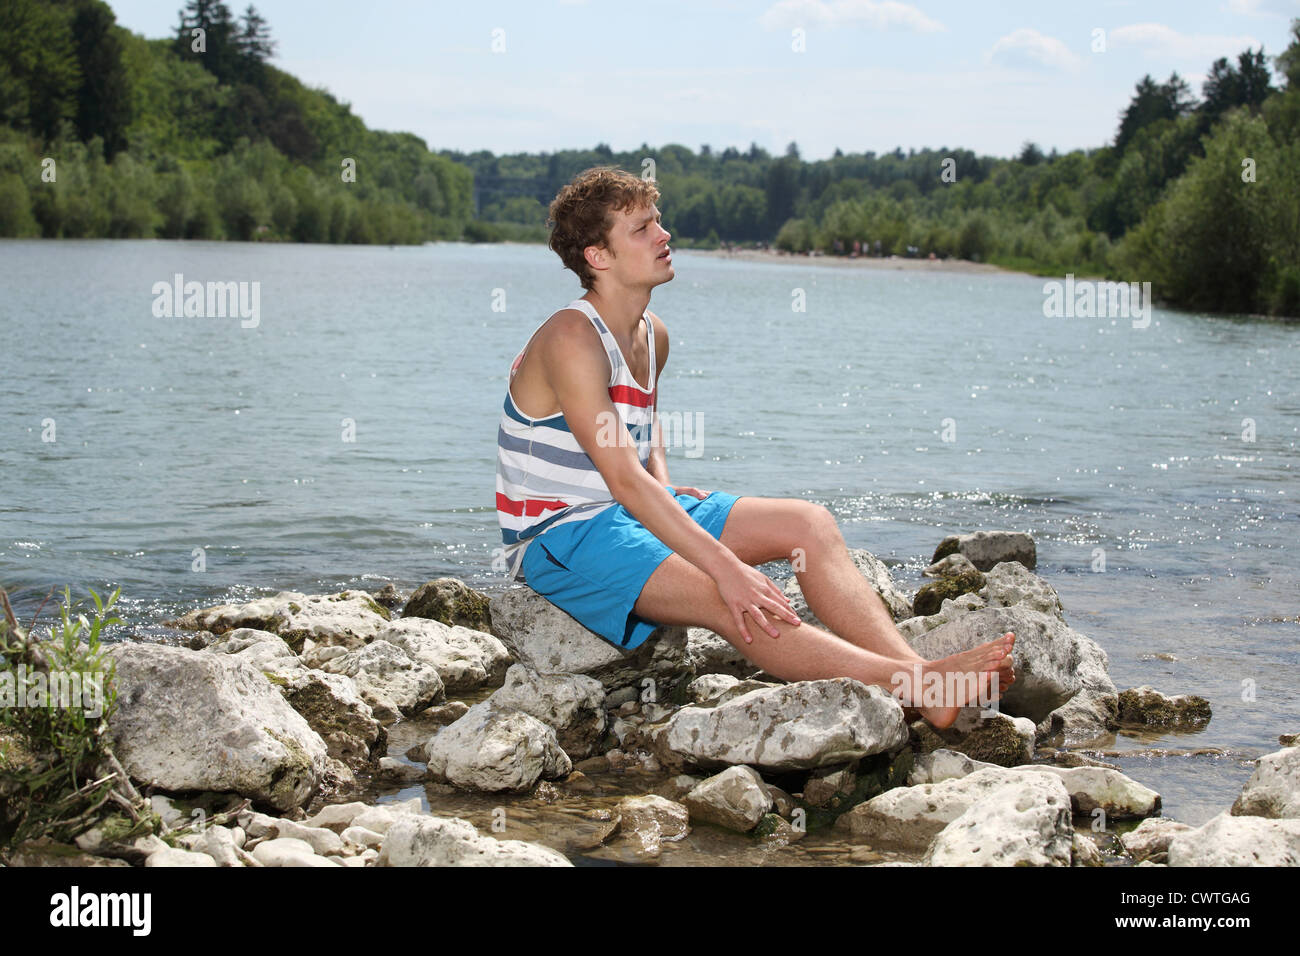 Jeune homme en été d'usure au niveau de la rivière Isar, Munich, Bavière, Allemagne Banque D'Images